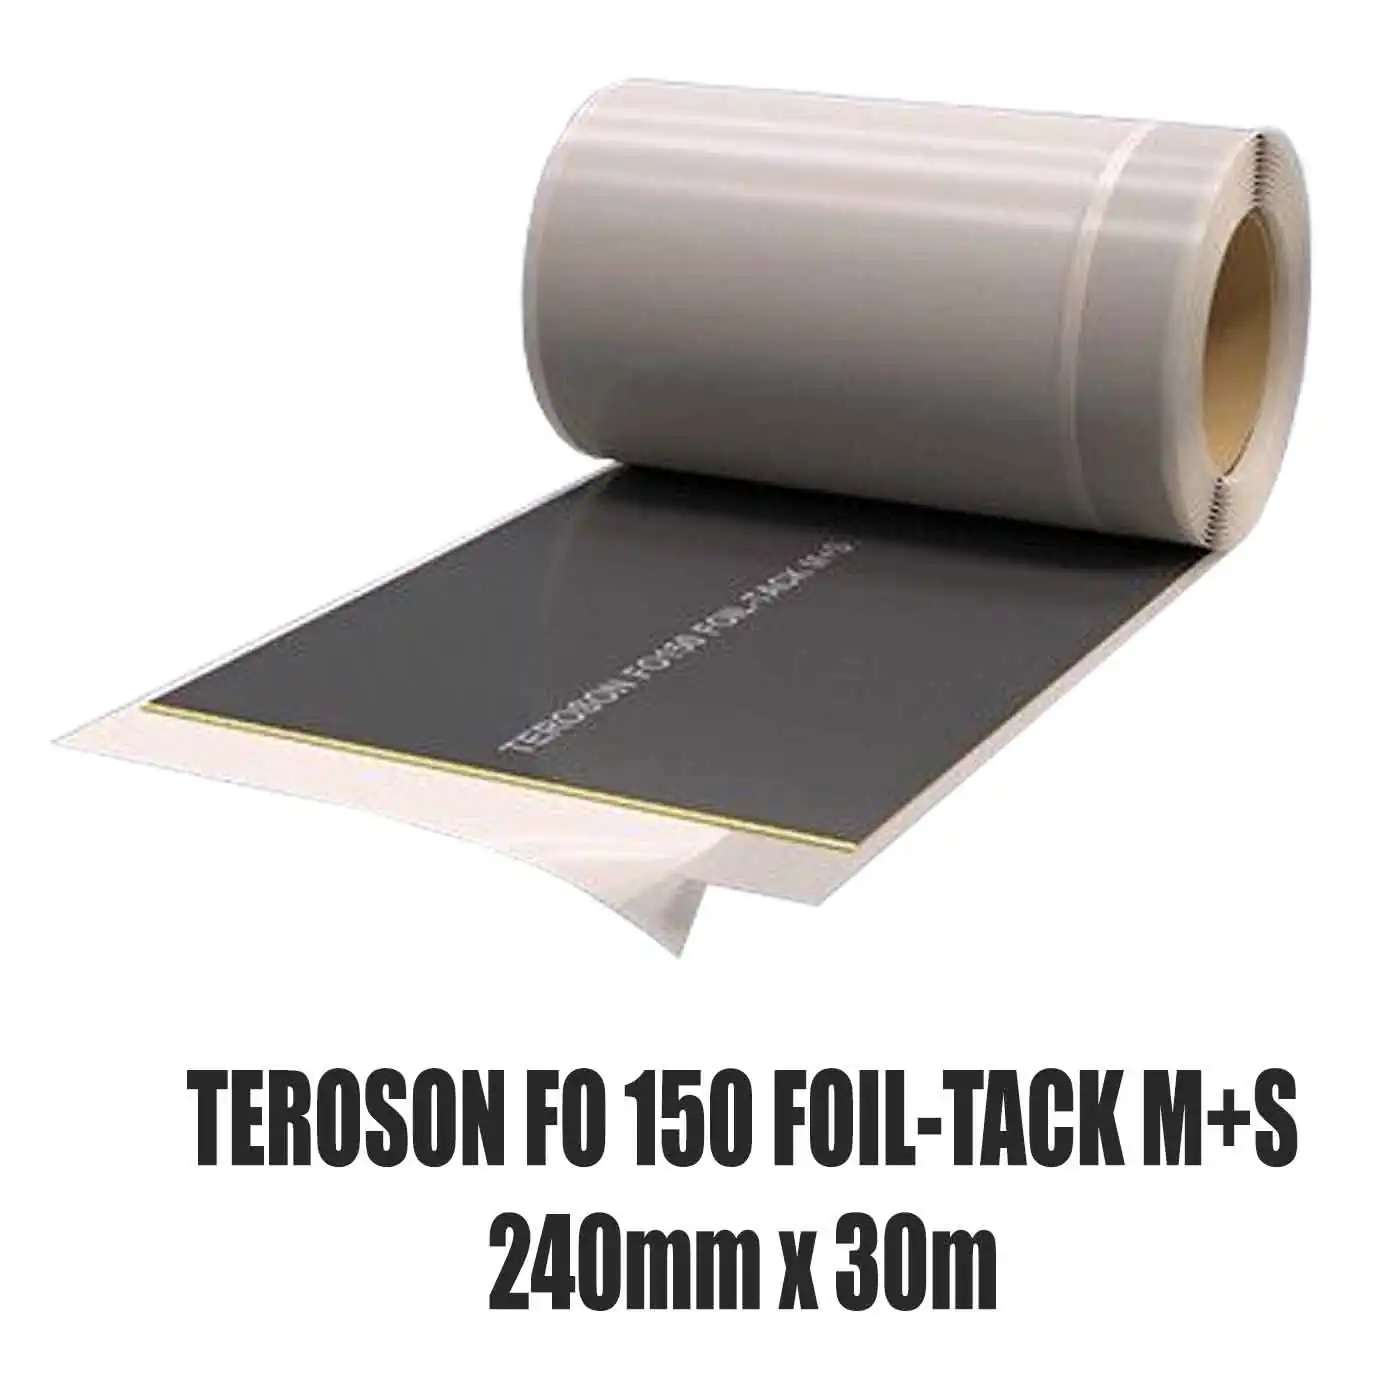 Dichtfolie TEROSON FO 150 FOIL-TACK M+S 240 mm x 30 m